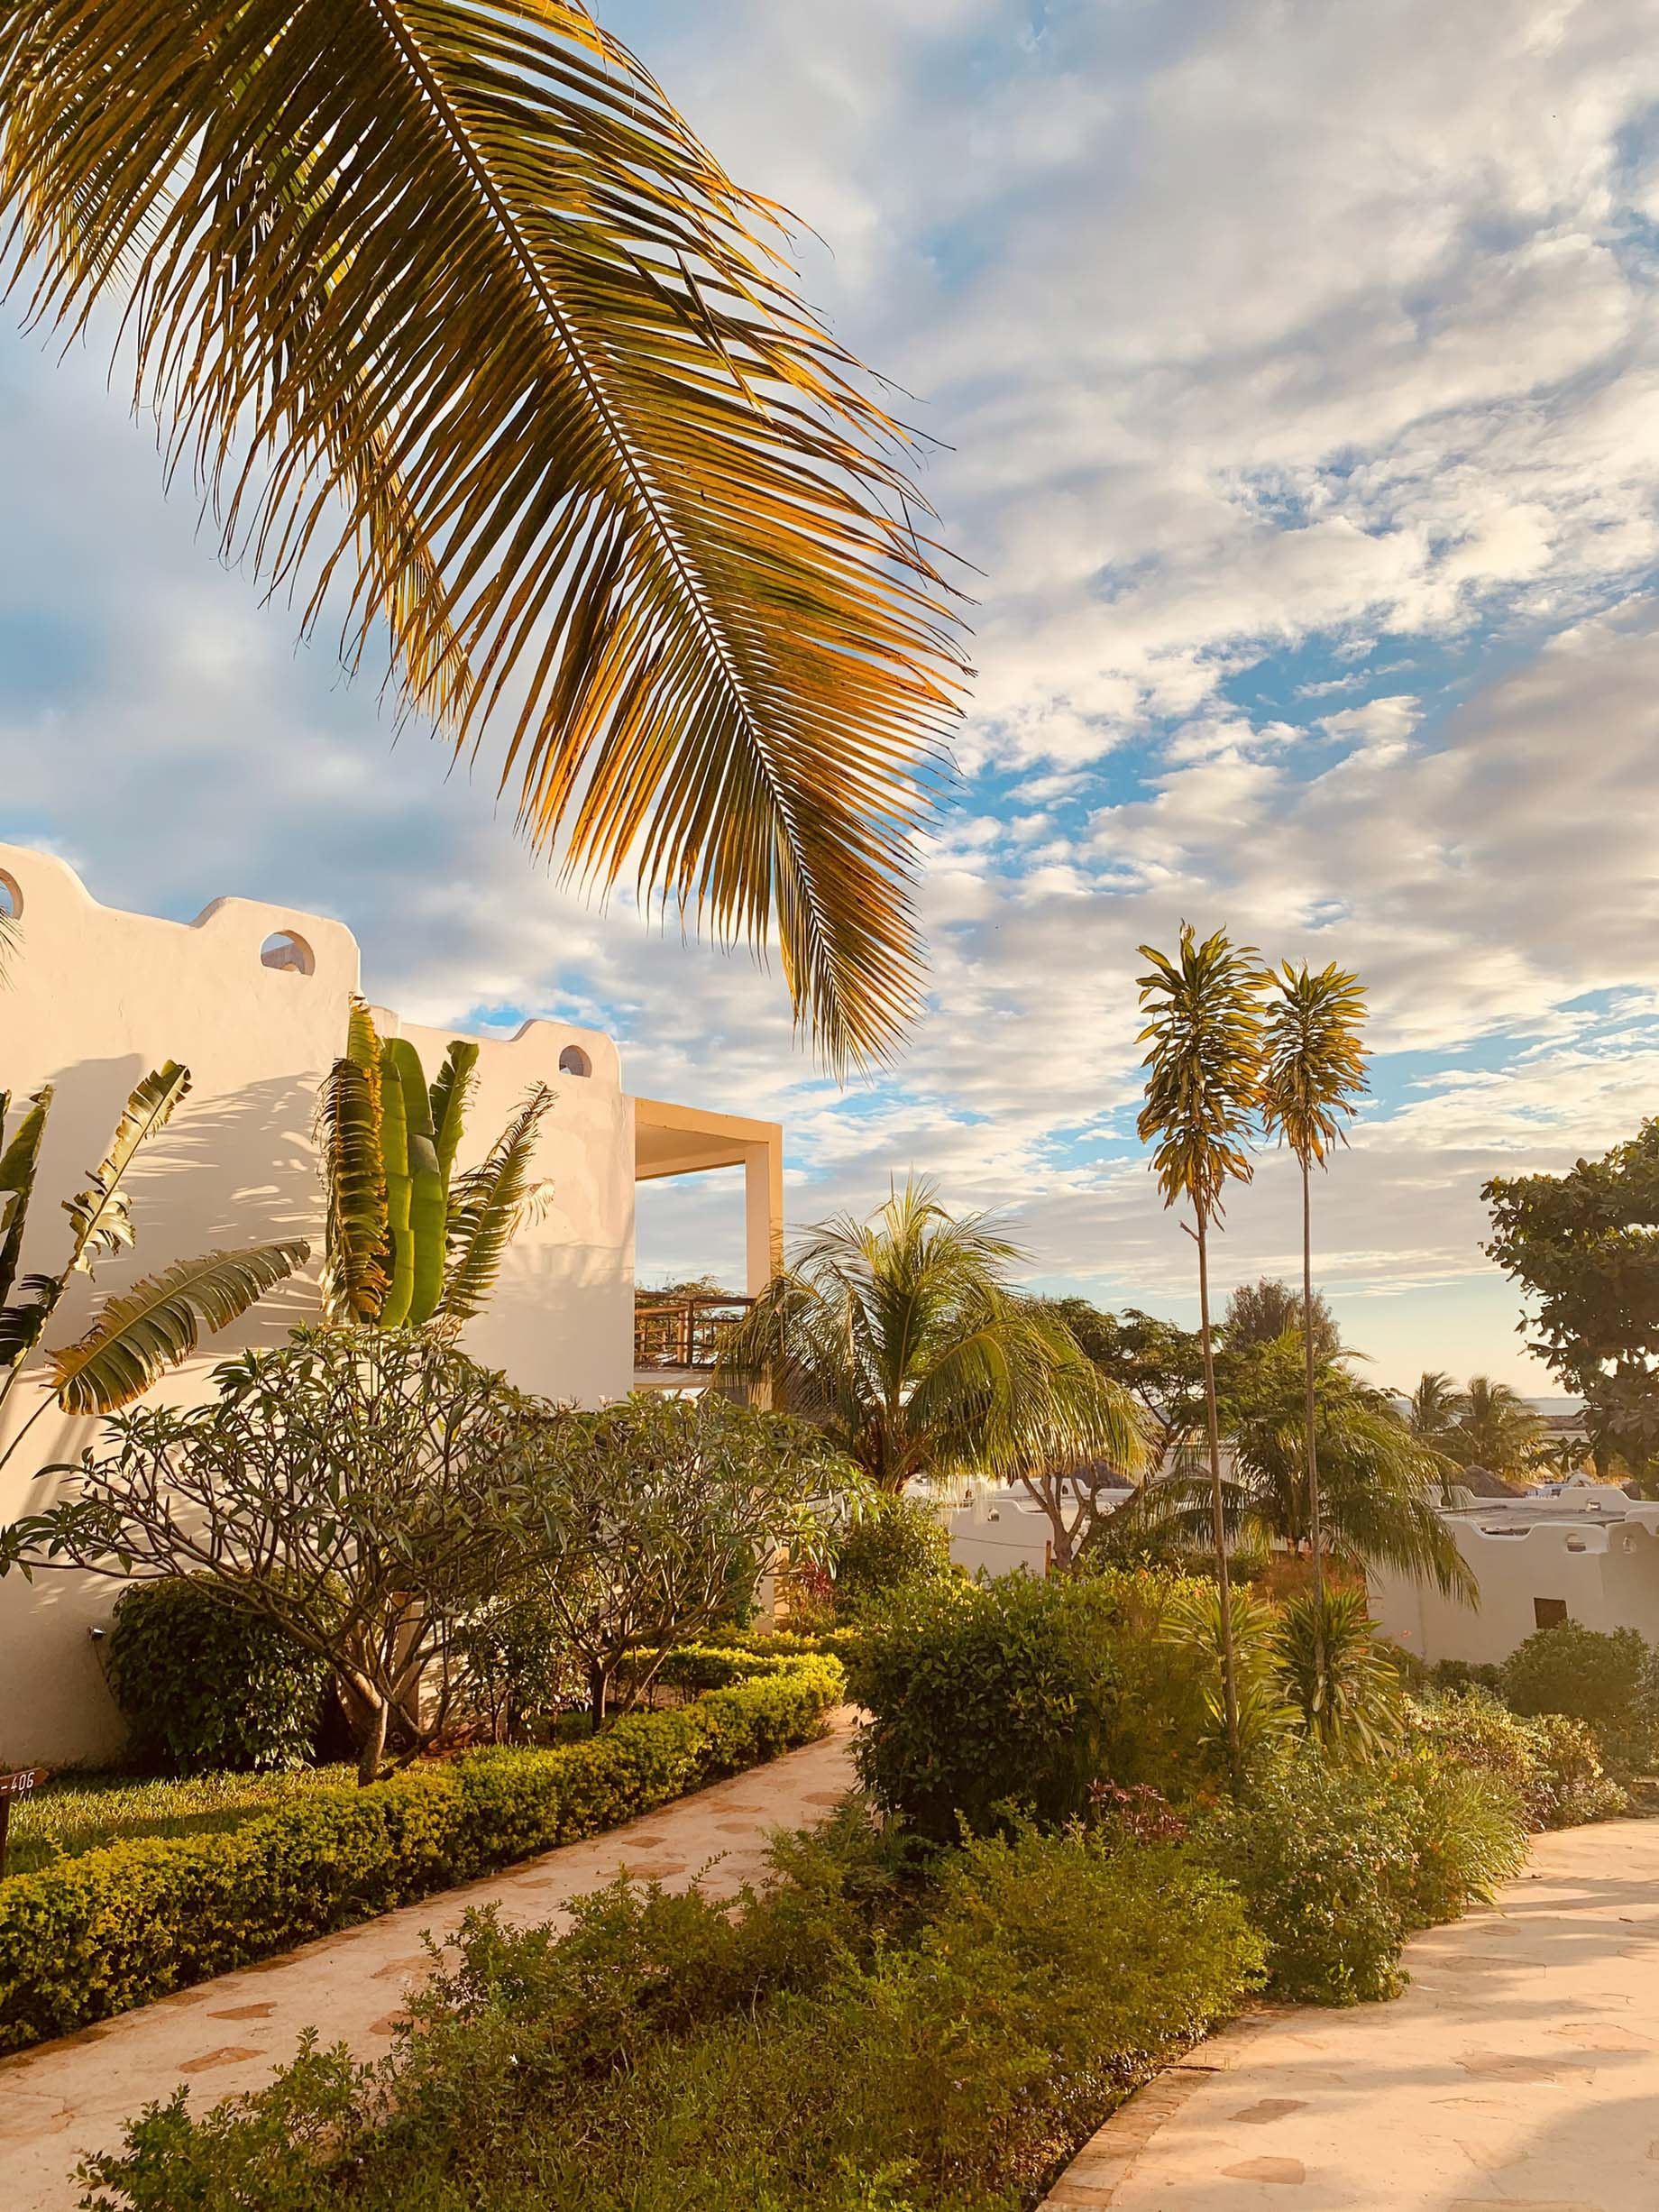 Gold Zanzibar Beach House & Spa Resort – Nungwi, Zanzibar, Tanzania – Resort Path